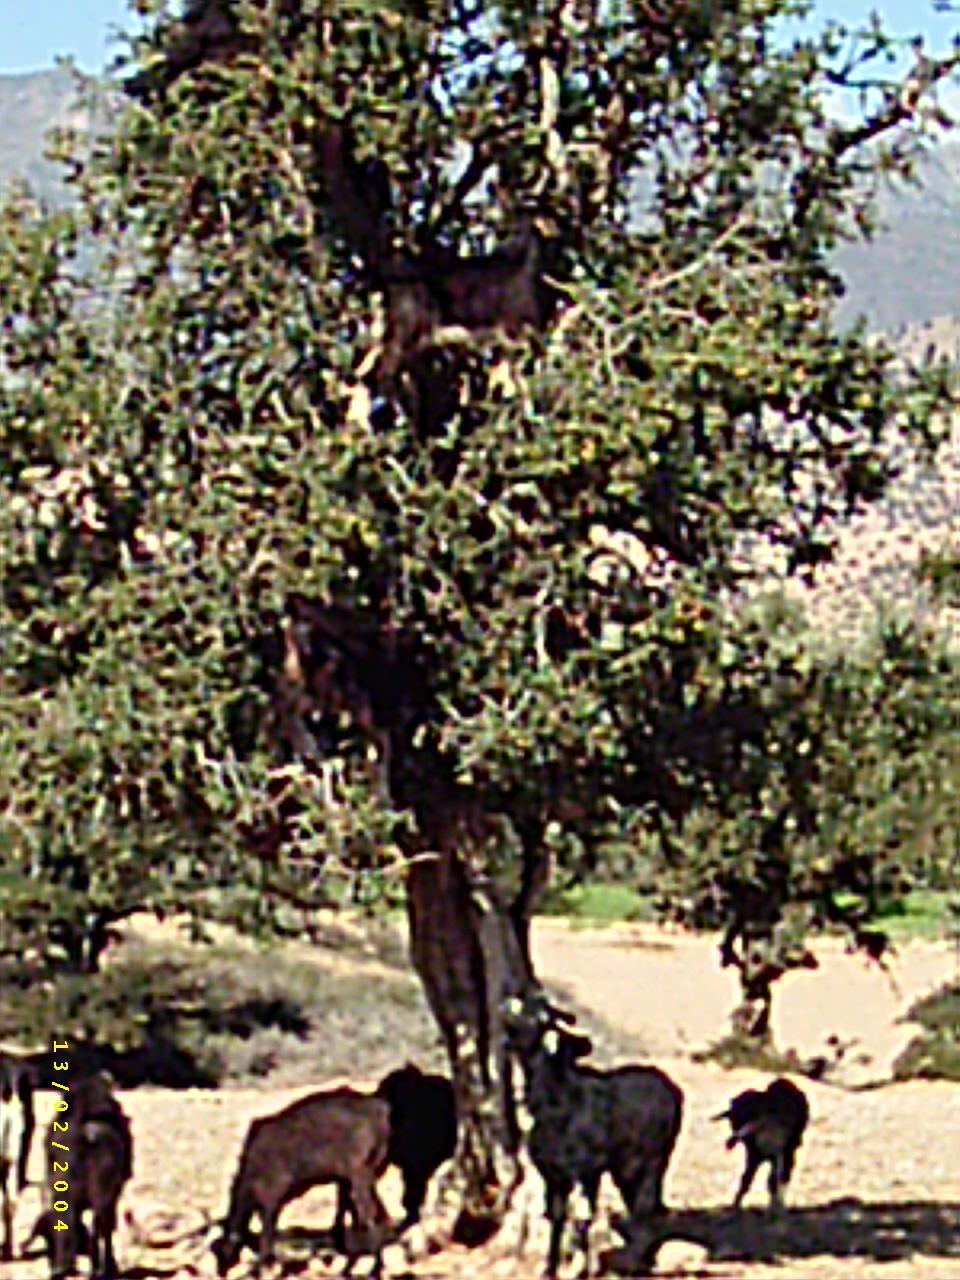 Um an grüne Blätter zu kommen, klettern die Ziegen mehrere Meter in die Bäume